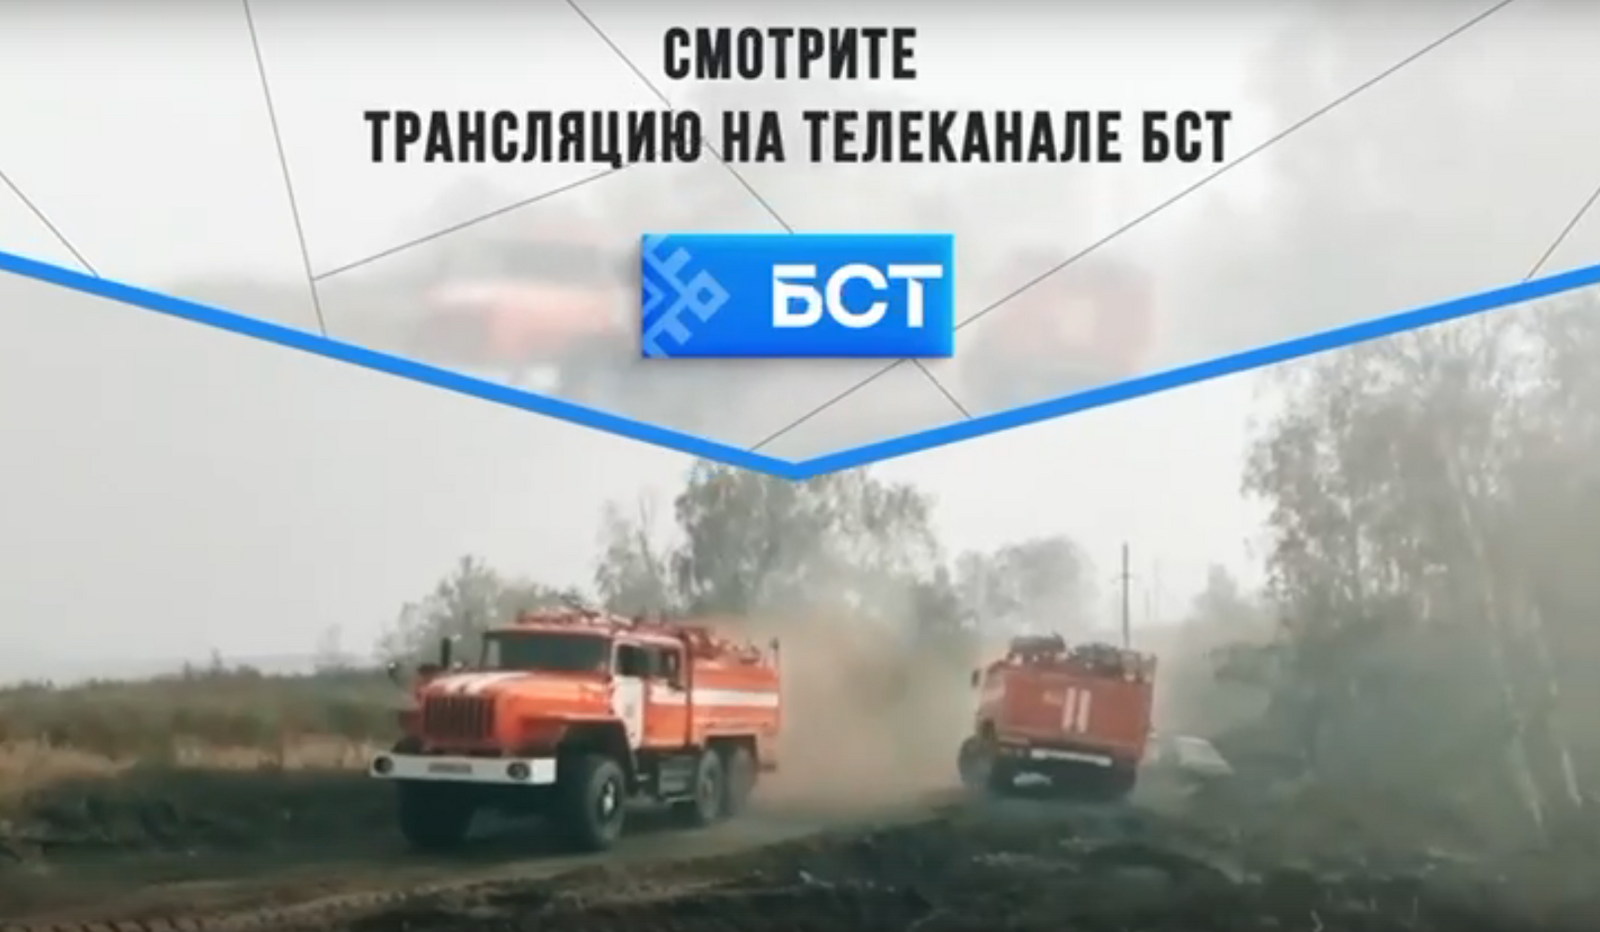 Пожароопасный сезон в Башкортостане: брифинг в прямом эфире БСТ